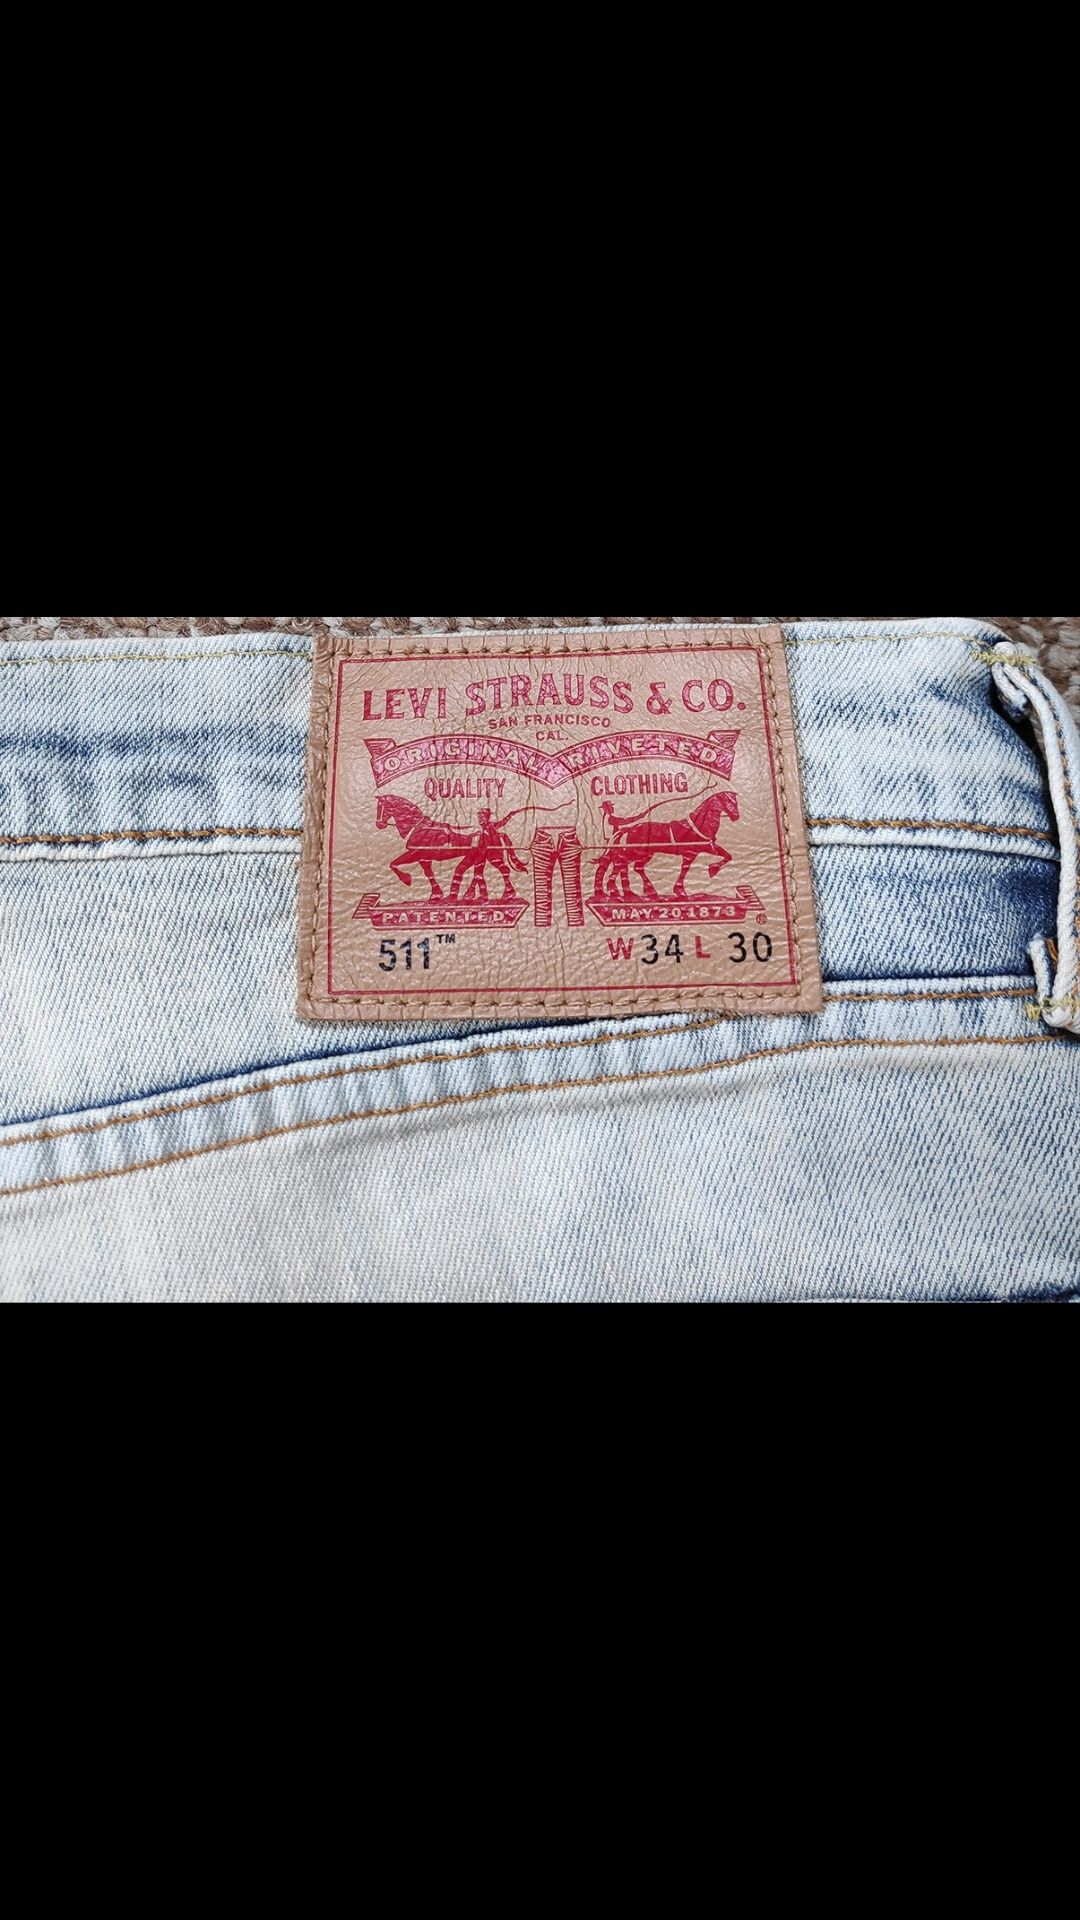 LEVI'S 511 Slim Fit джинсы Оригинал W34 L30 как новые